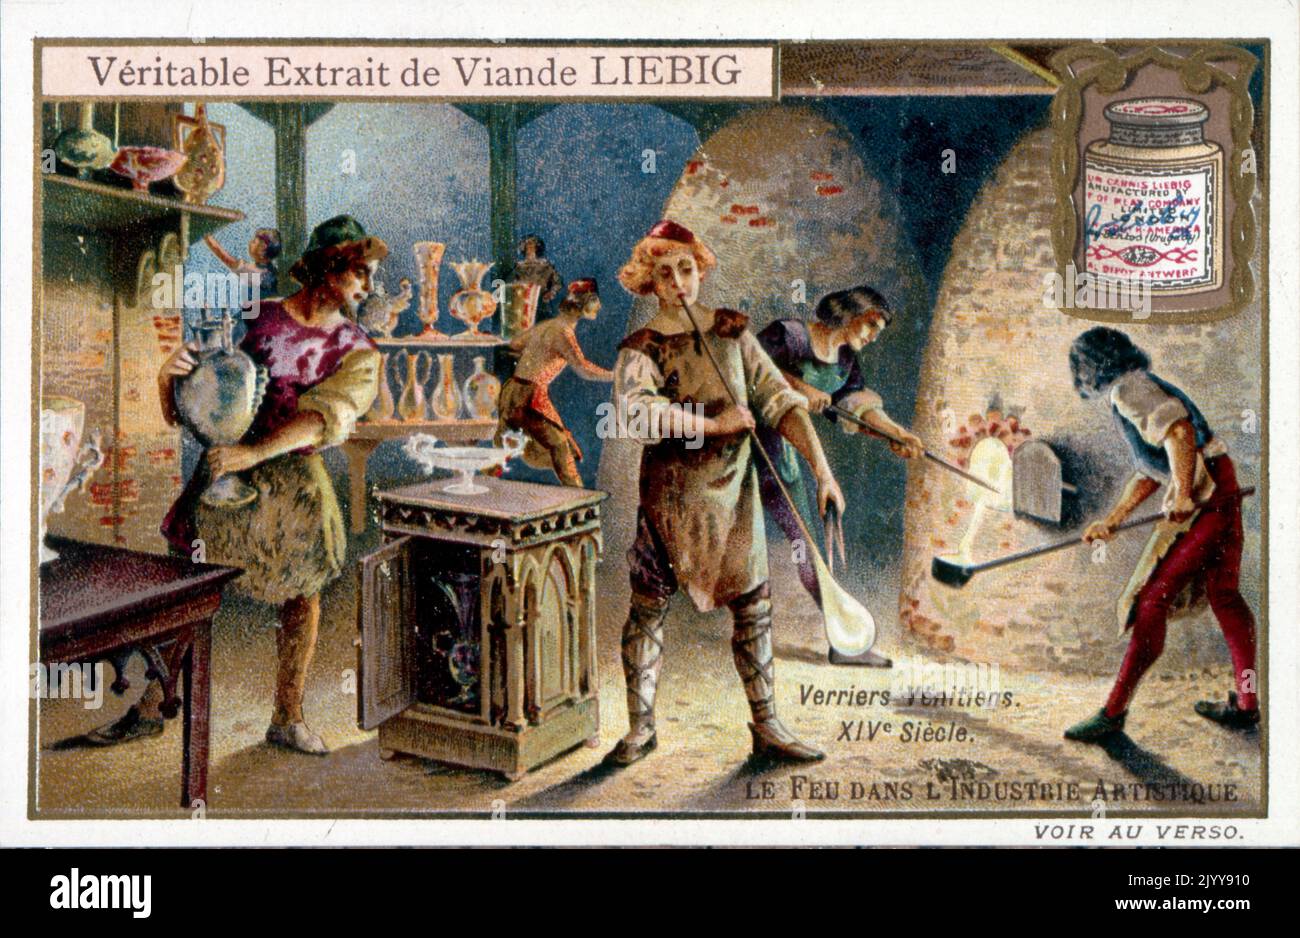 Pubblicità per i prodotti Liebig; vetrai da Venezia nel 14th° secolo. Foto Stock